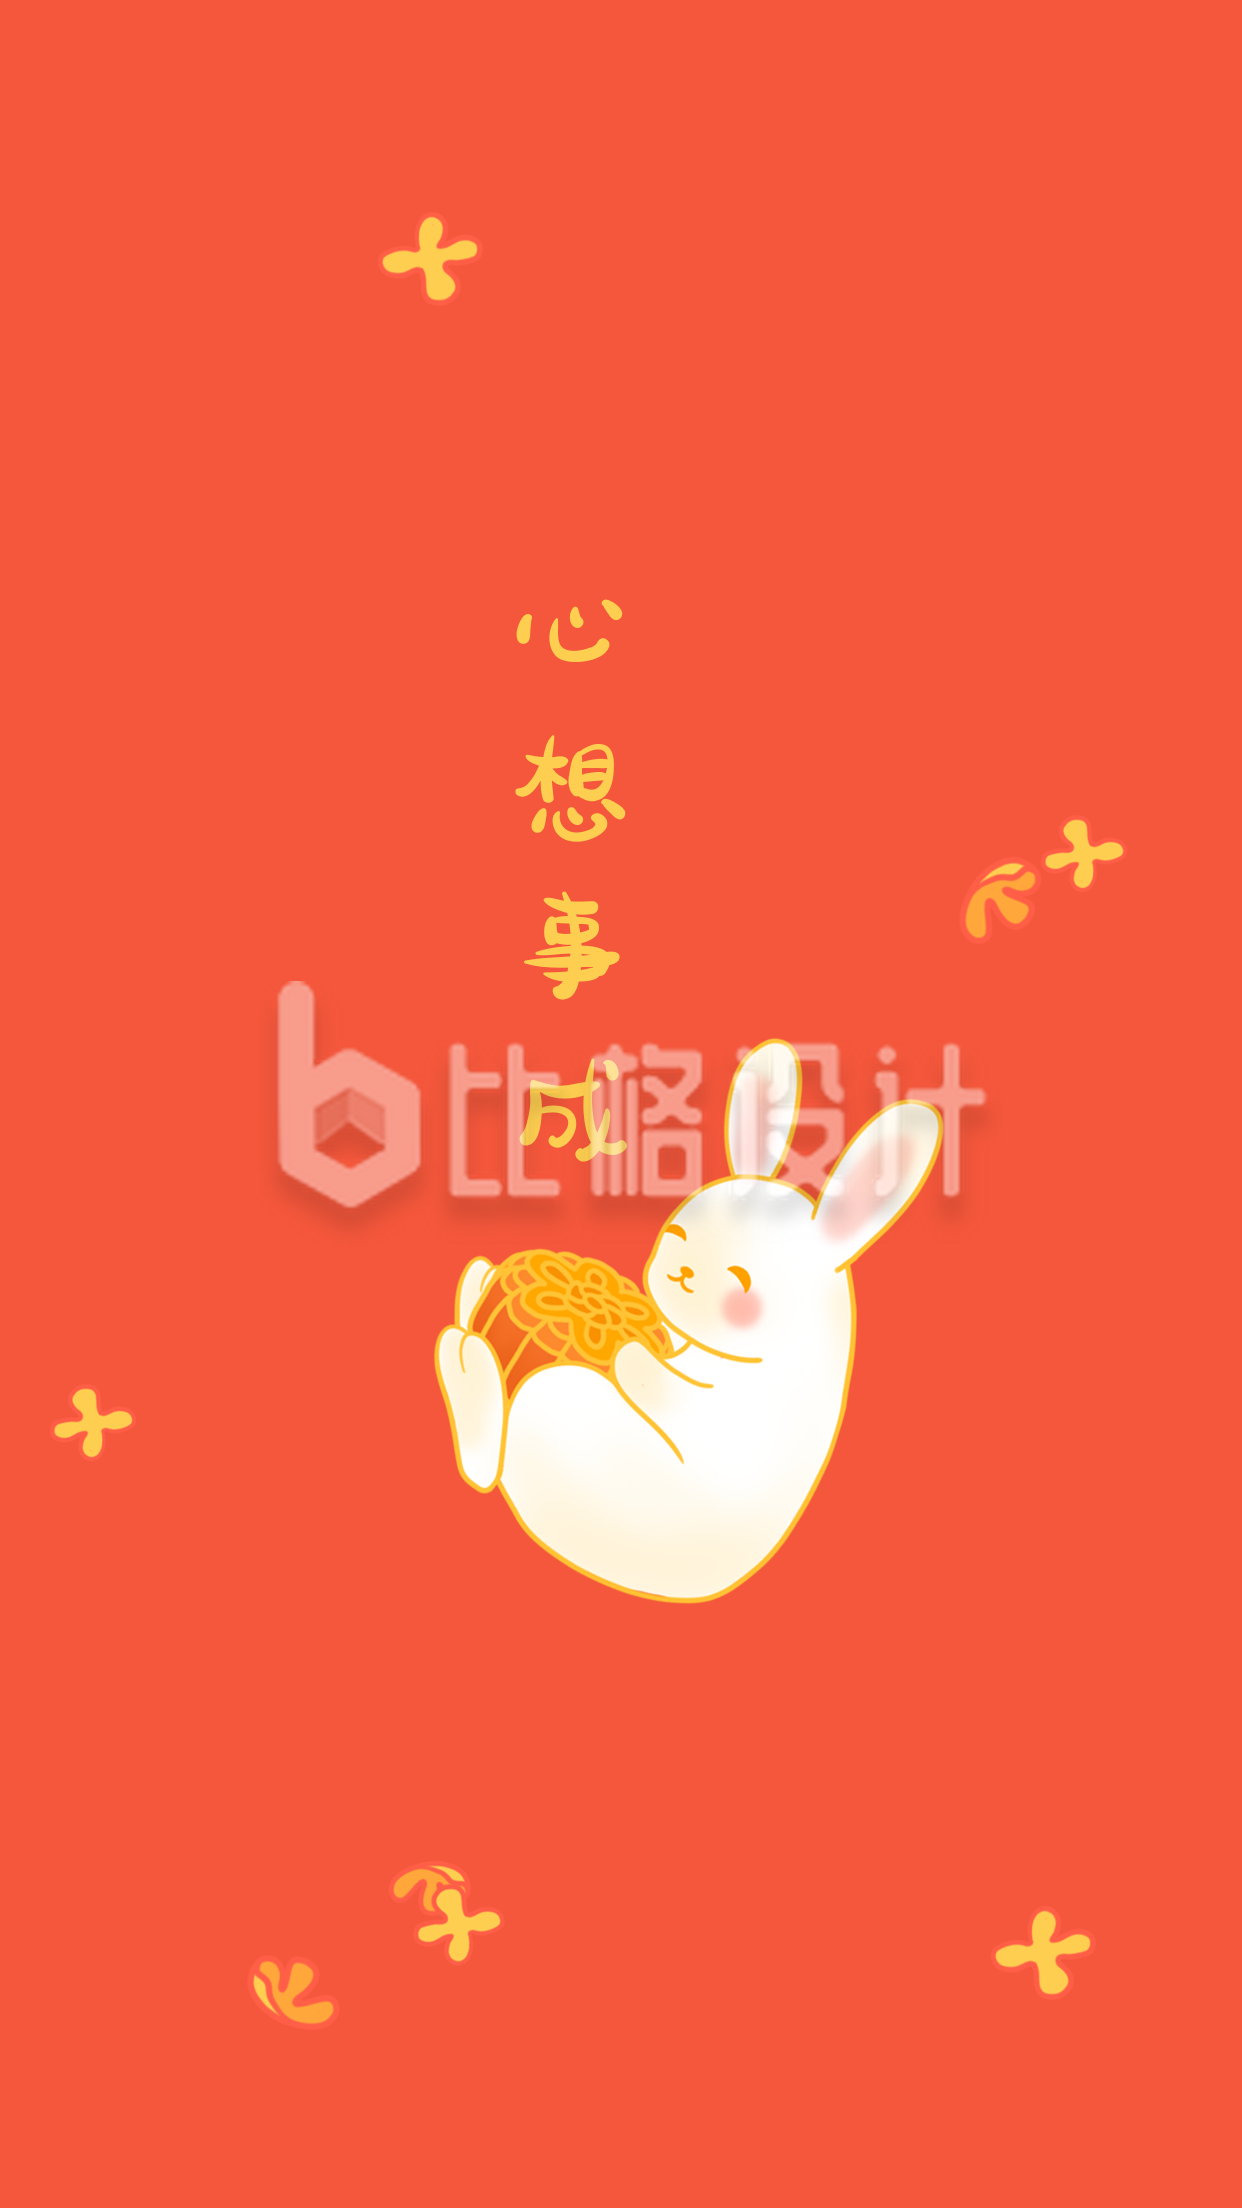 橙色背景卡通手绘可爱抱月饼兔子桂花花瓣壁纸